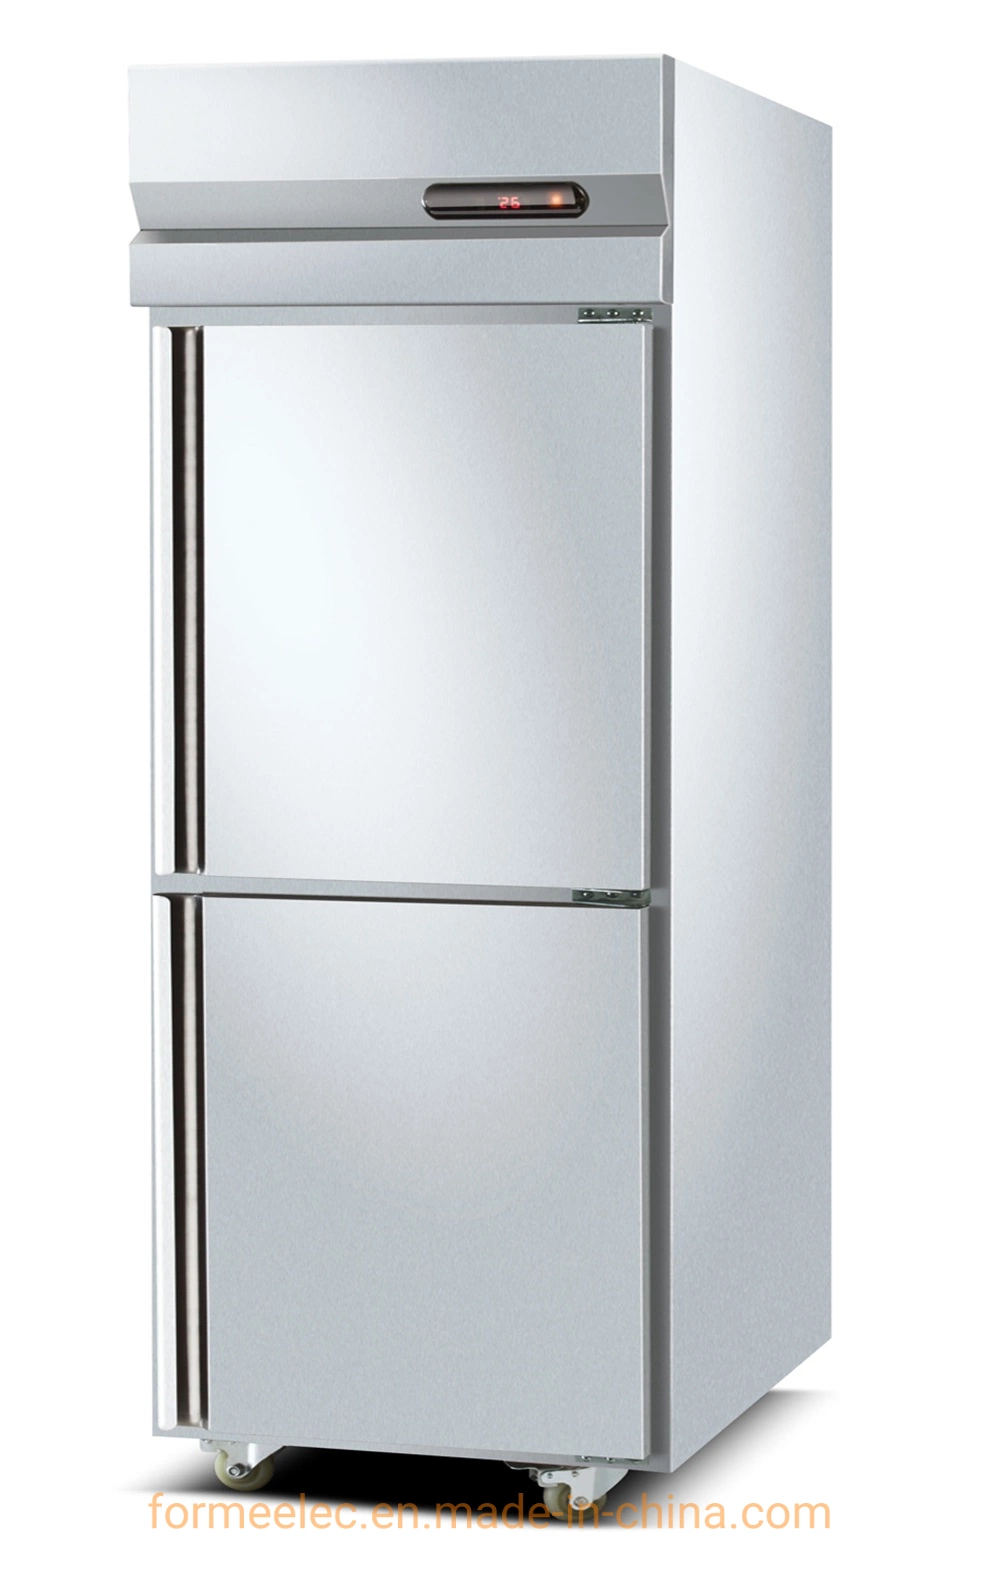 500L Kitchen Refrigeration Equipment Kitchen Refrigerator Air Cooling Kitchen Freezer